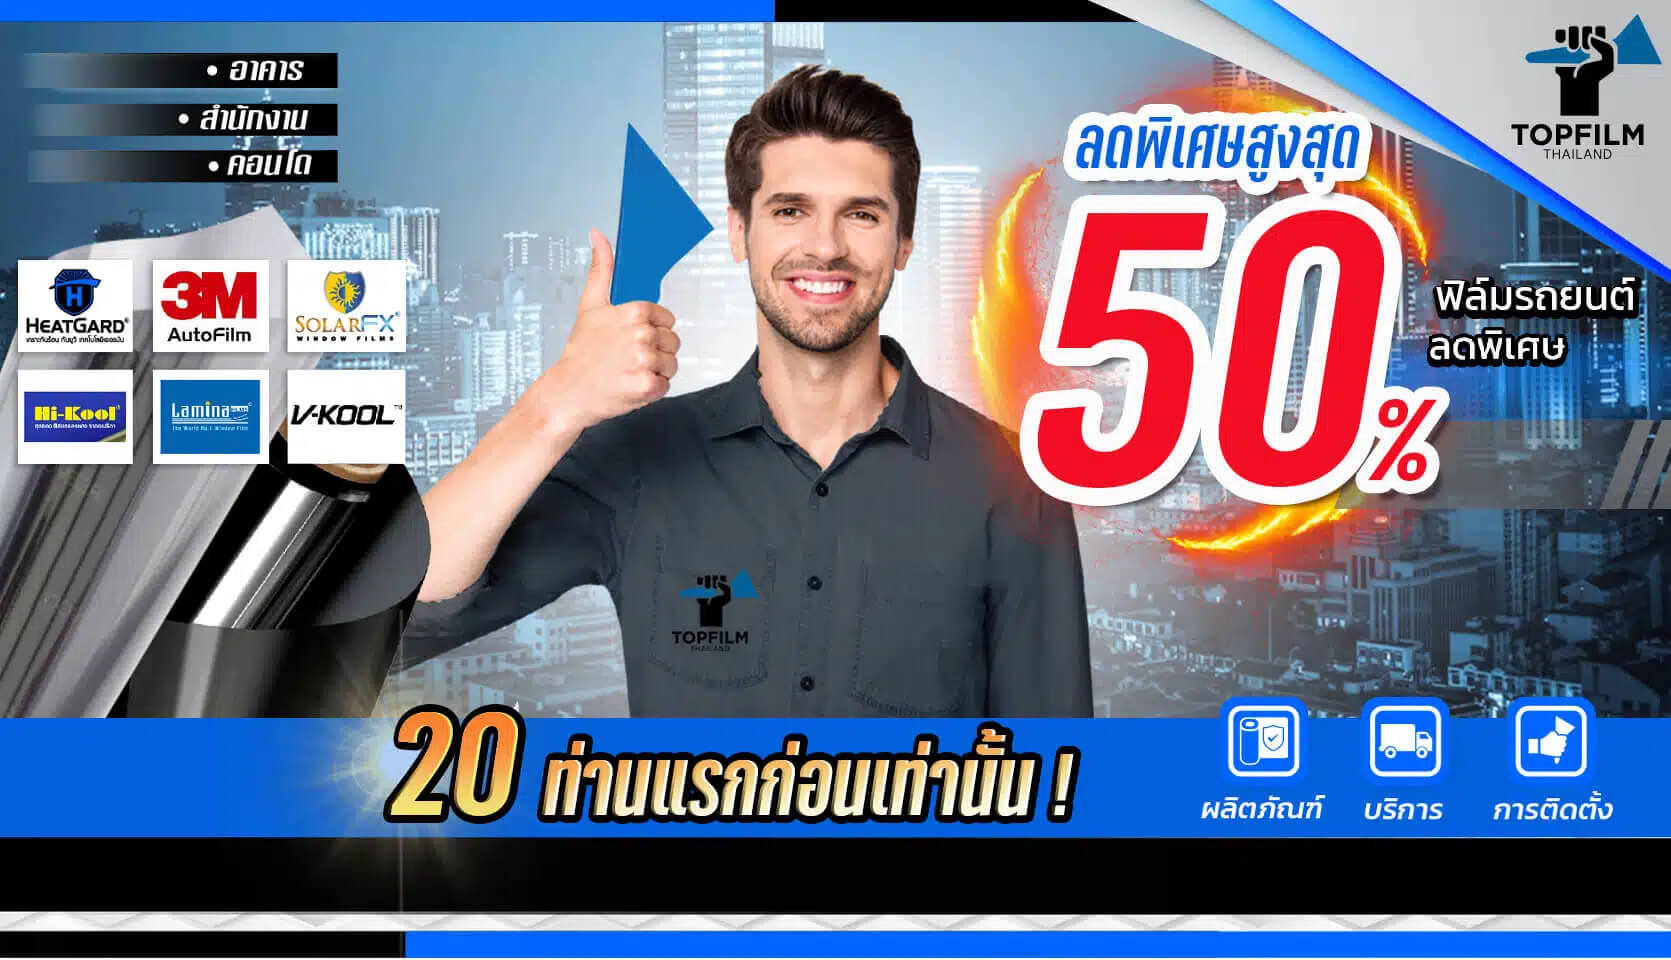 Topfilm Thailand ร้านติดฟิล์มรถยนต์ ฟิล์มเซรามิก ราคาถูกชัวร์ 2566